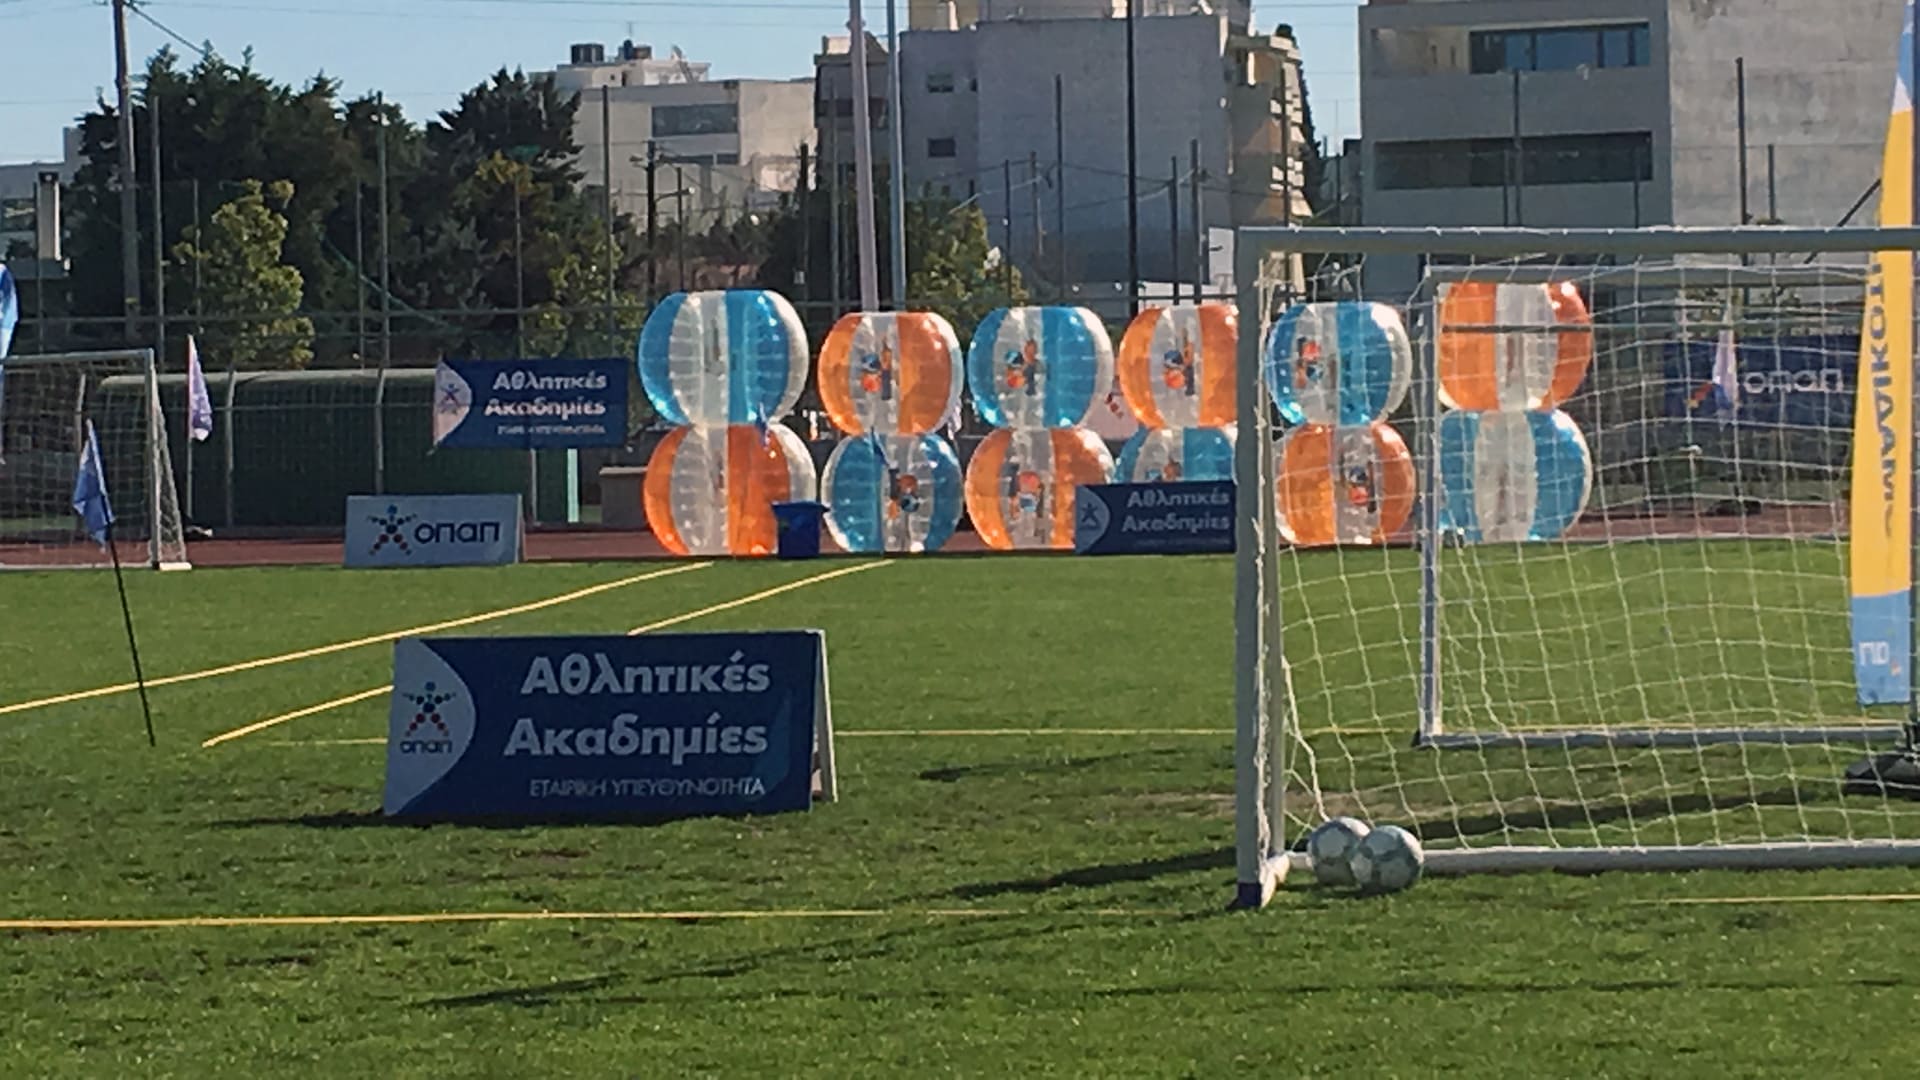 Τα BubbleBalls® στο φεστιβάλ των Αθλητικών Ακαδημιών ΟΠΑΠ για το 2019 στο Δημοτικό Στάδιο Σπατών